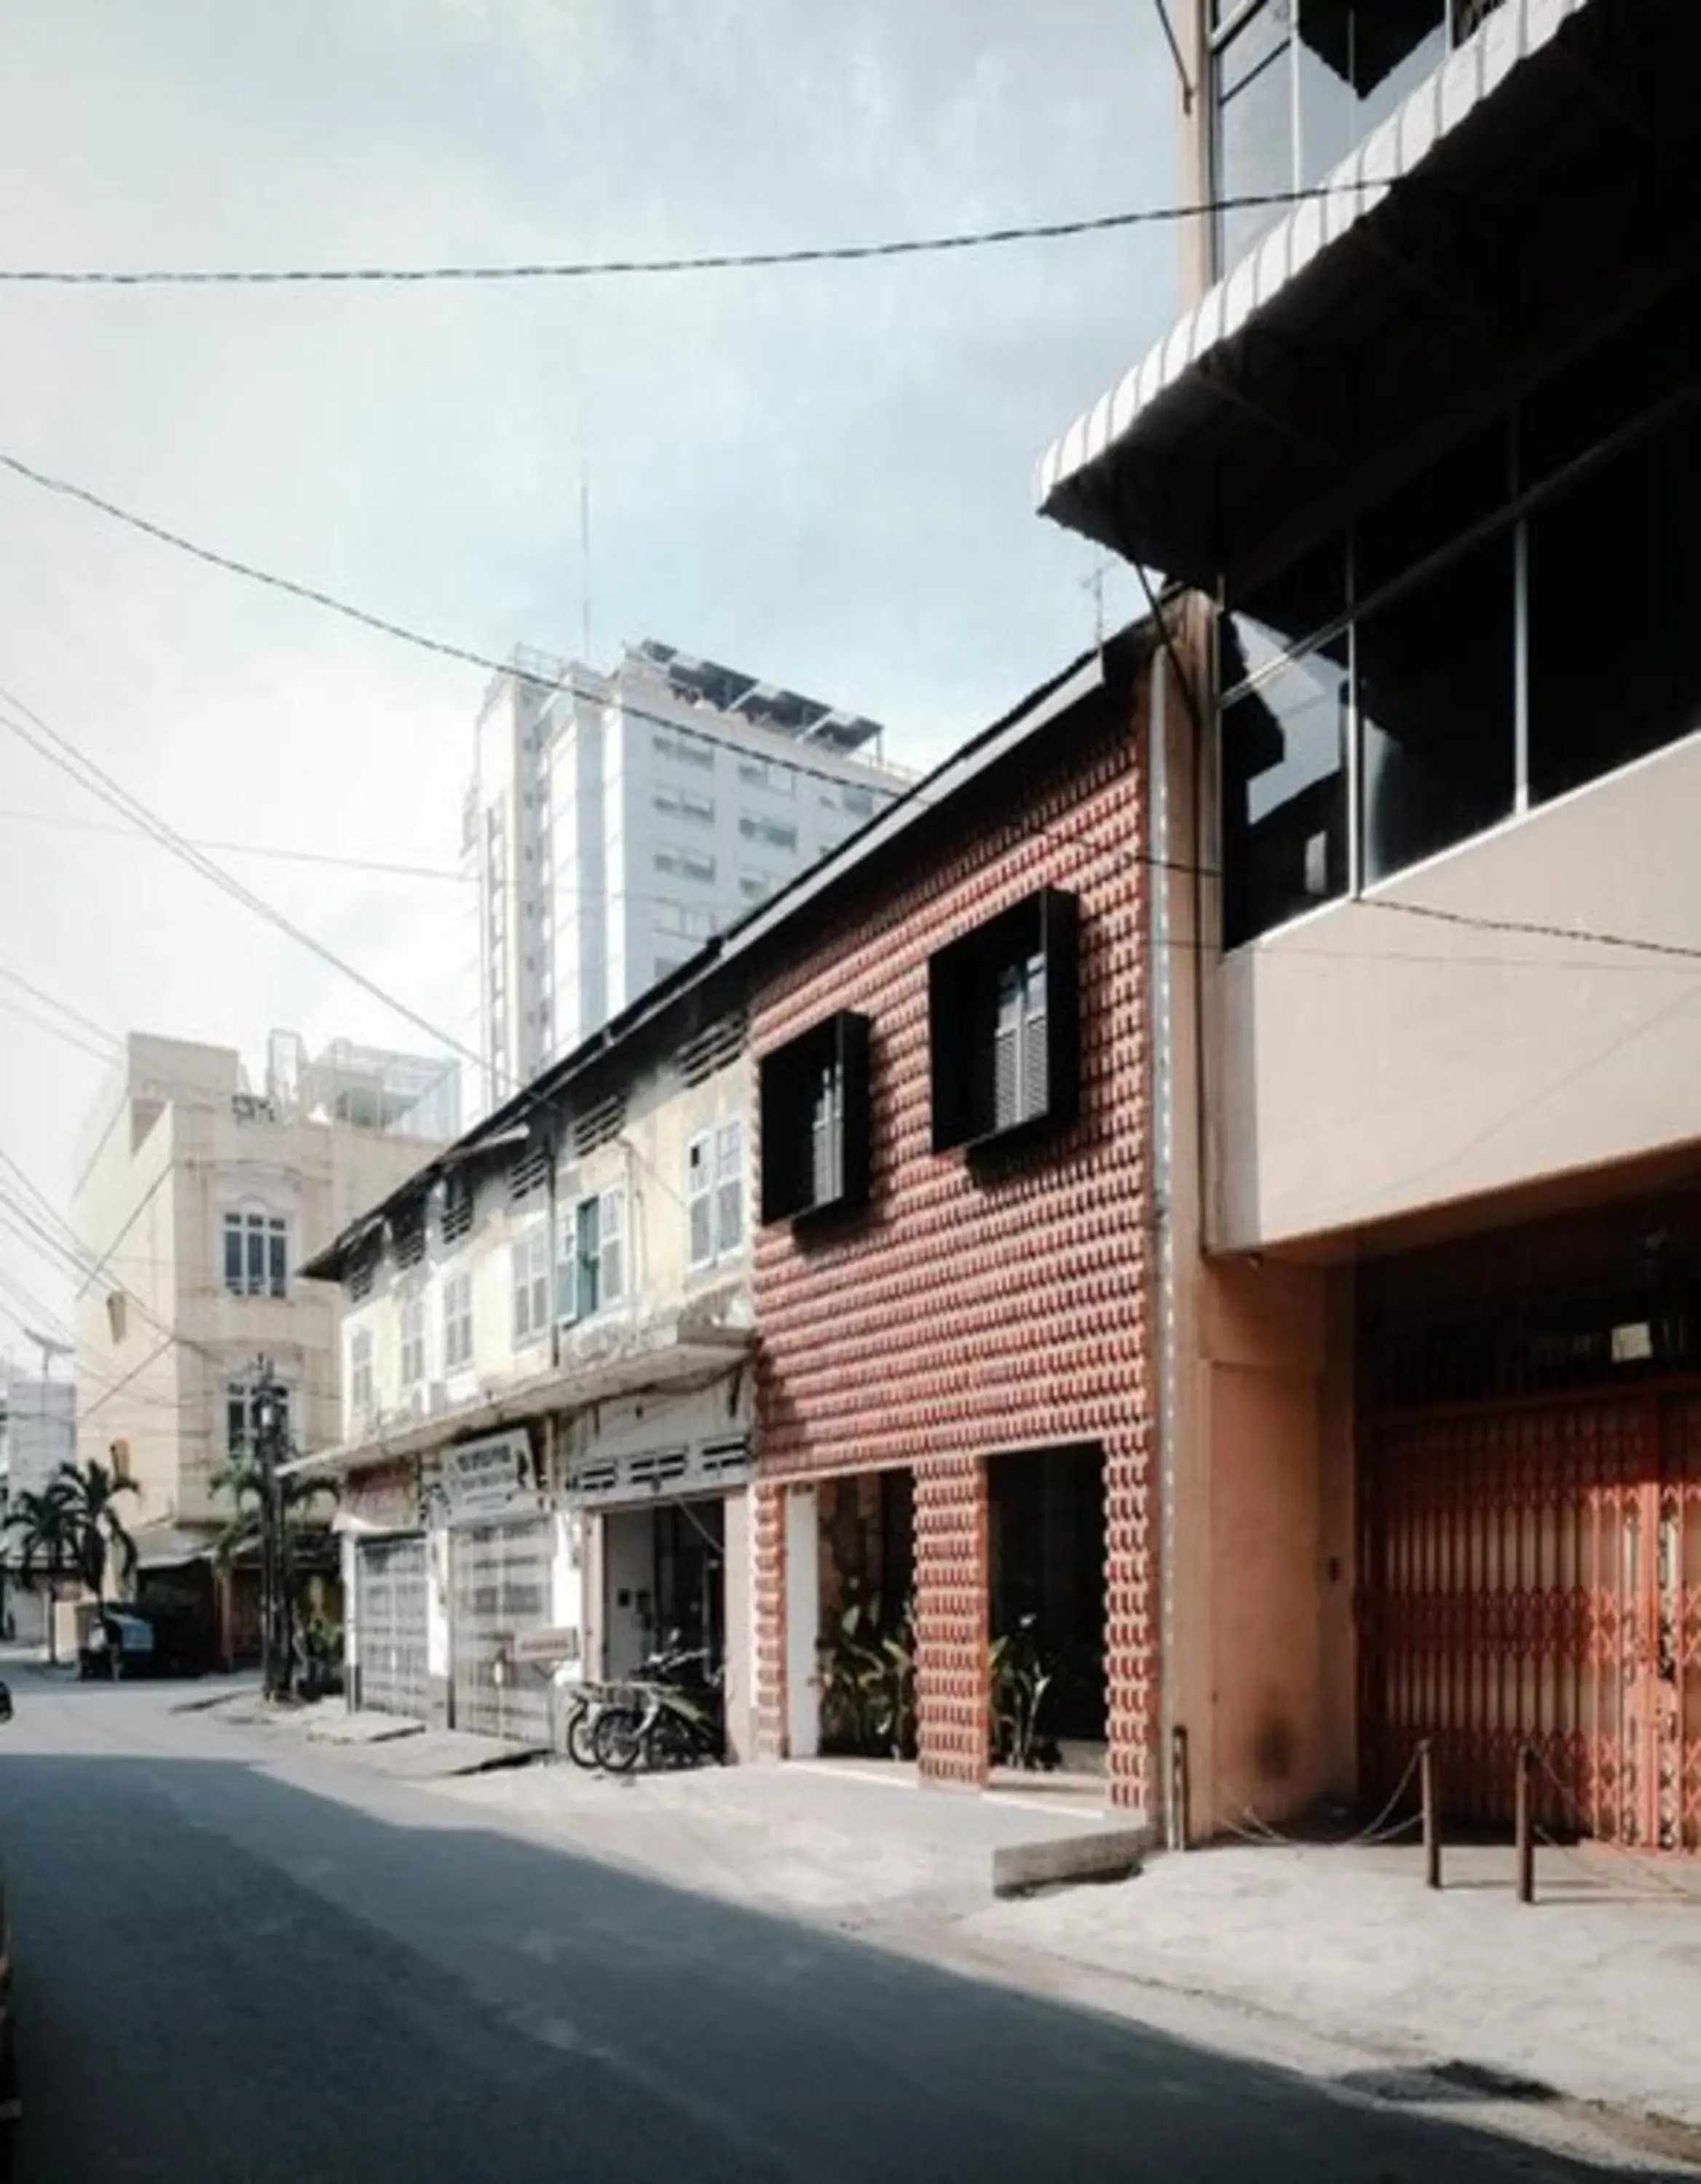 Property building, Winter in Semalam at Sun Yat Sen - SELF CHECK IN